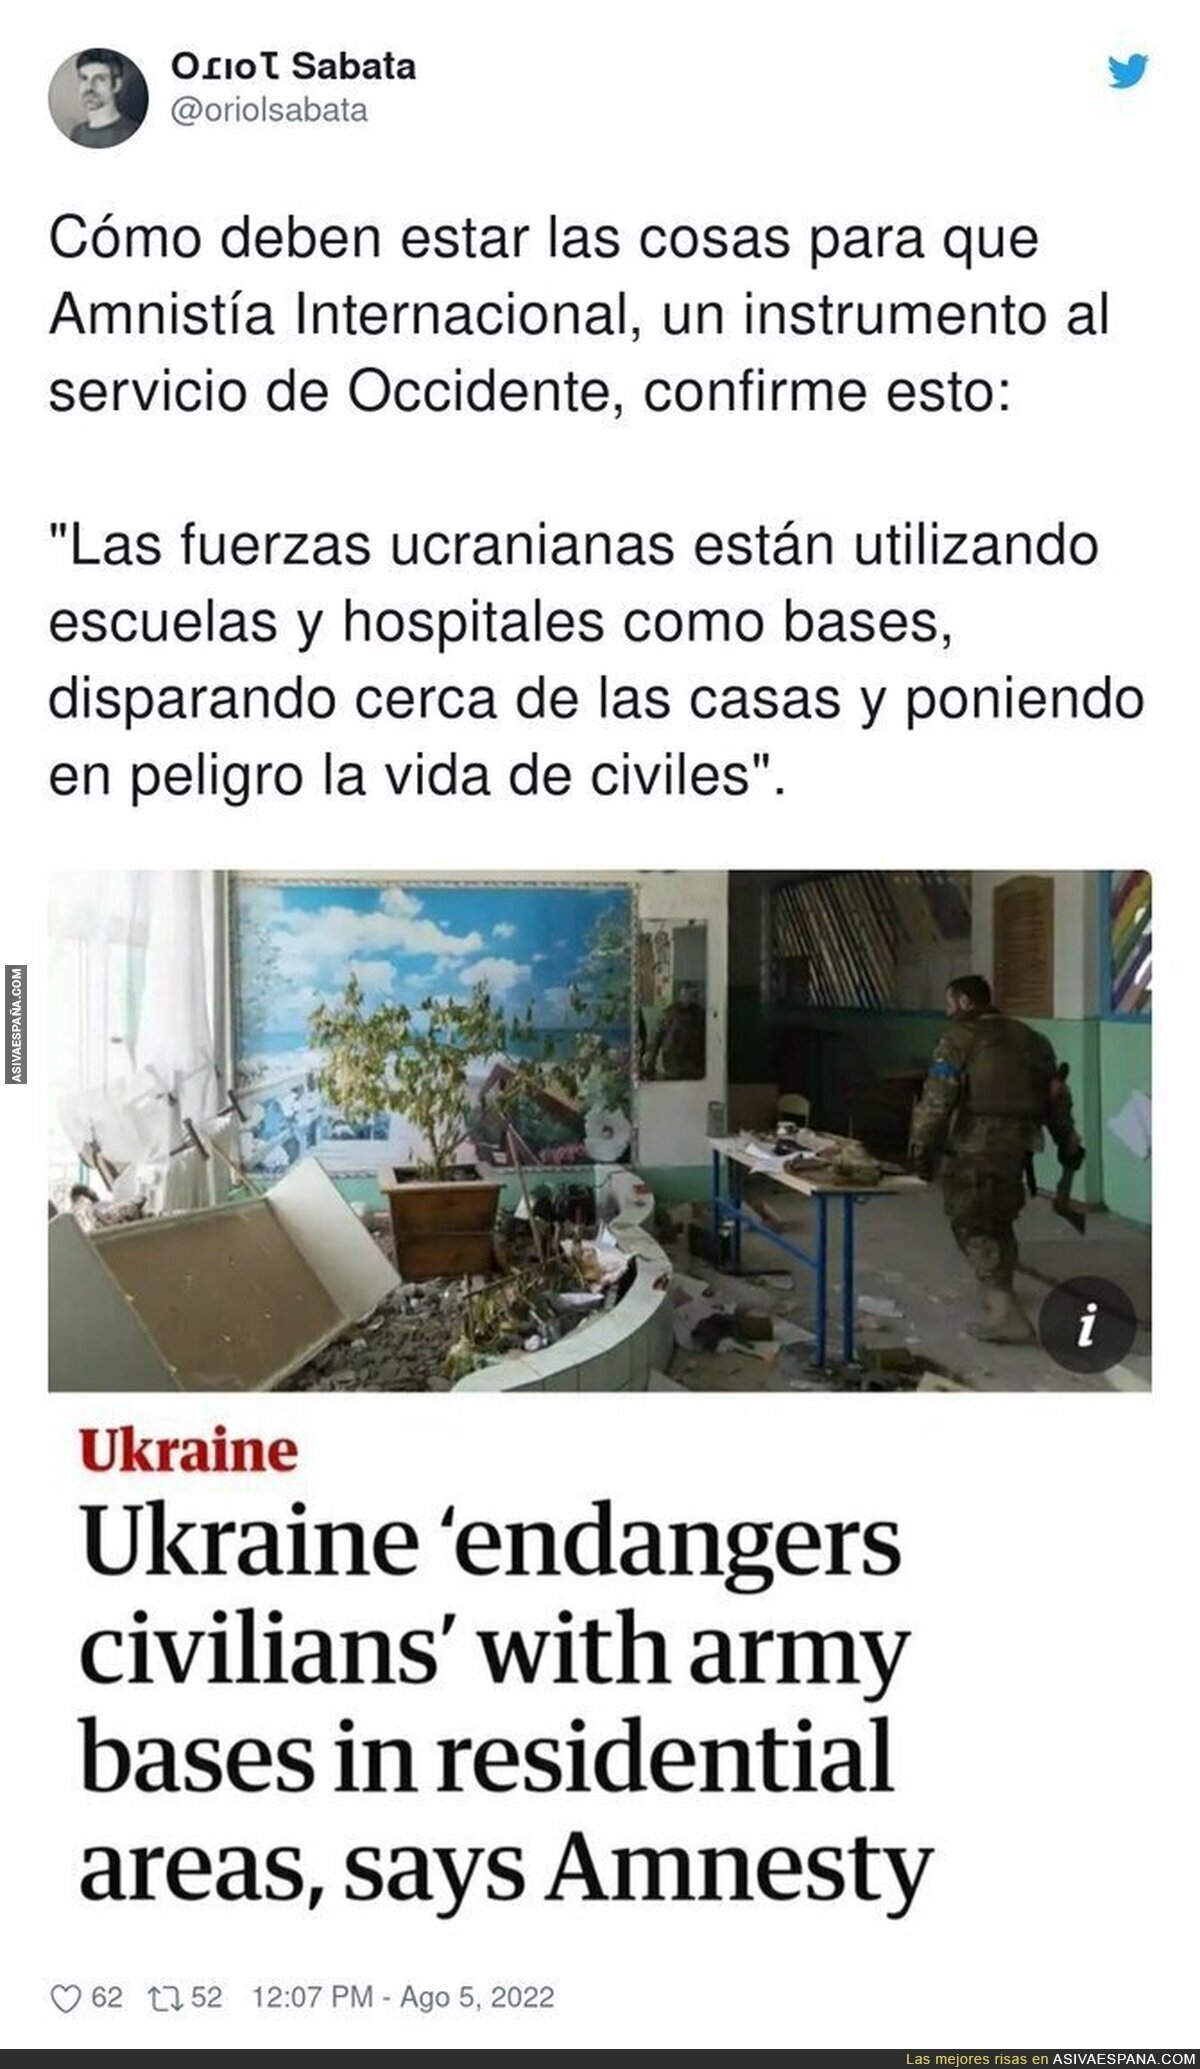 Ucrania no es tan buena como hacían creer ver